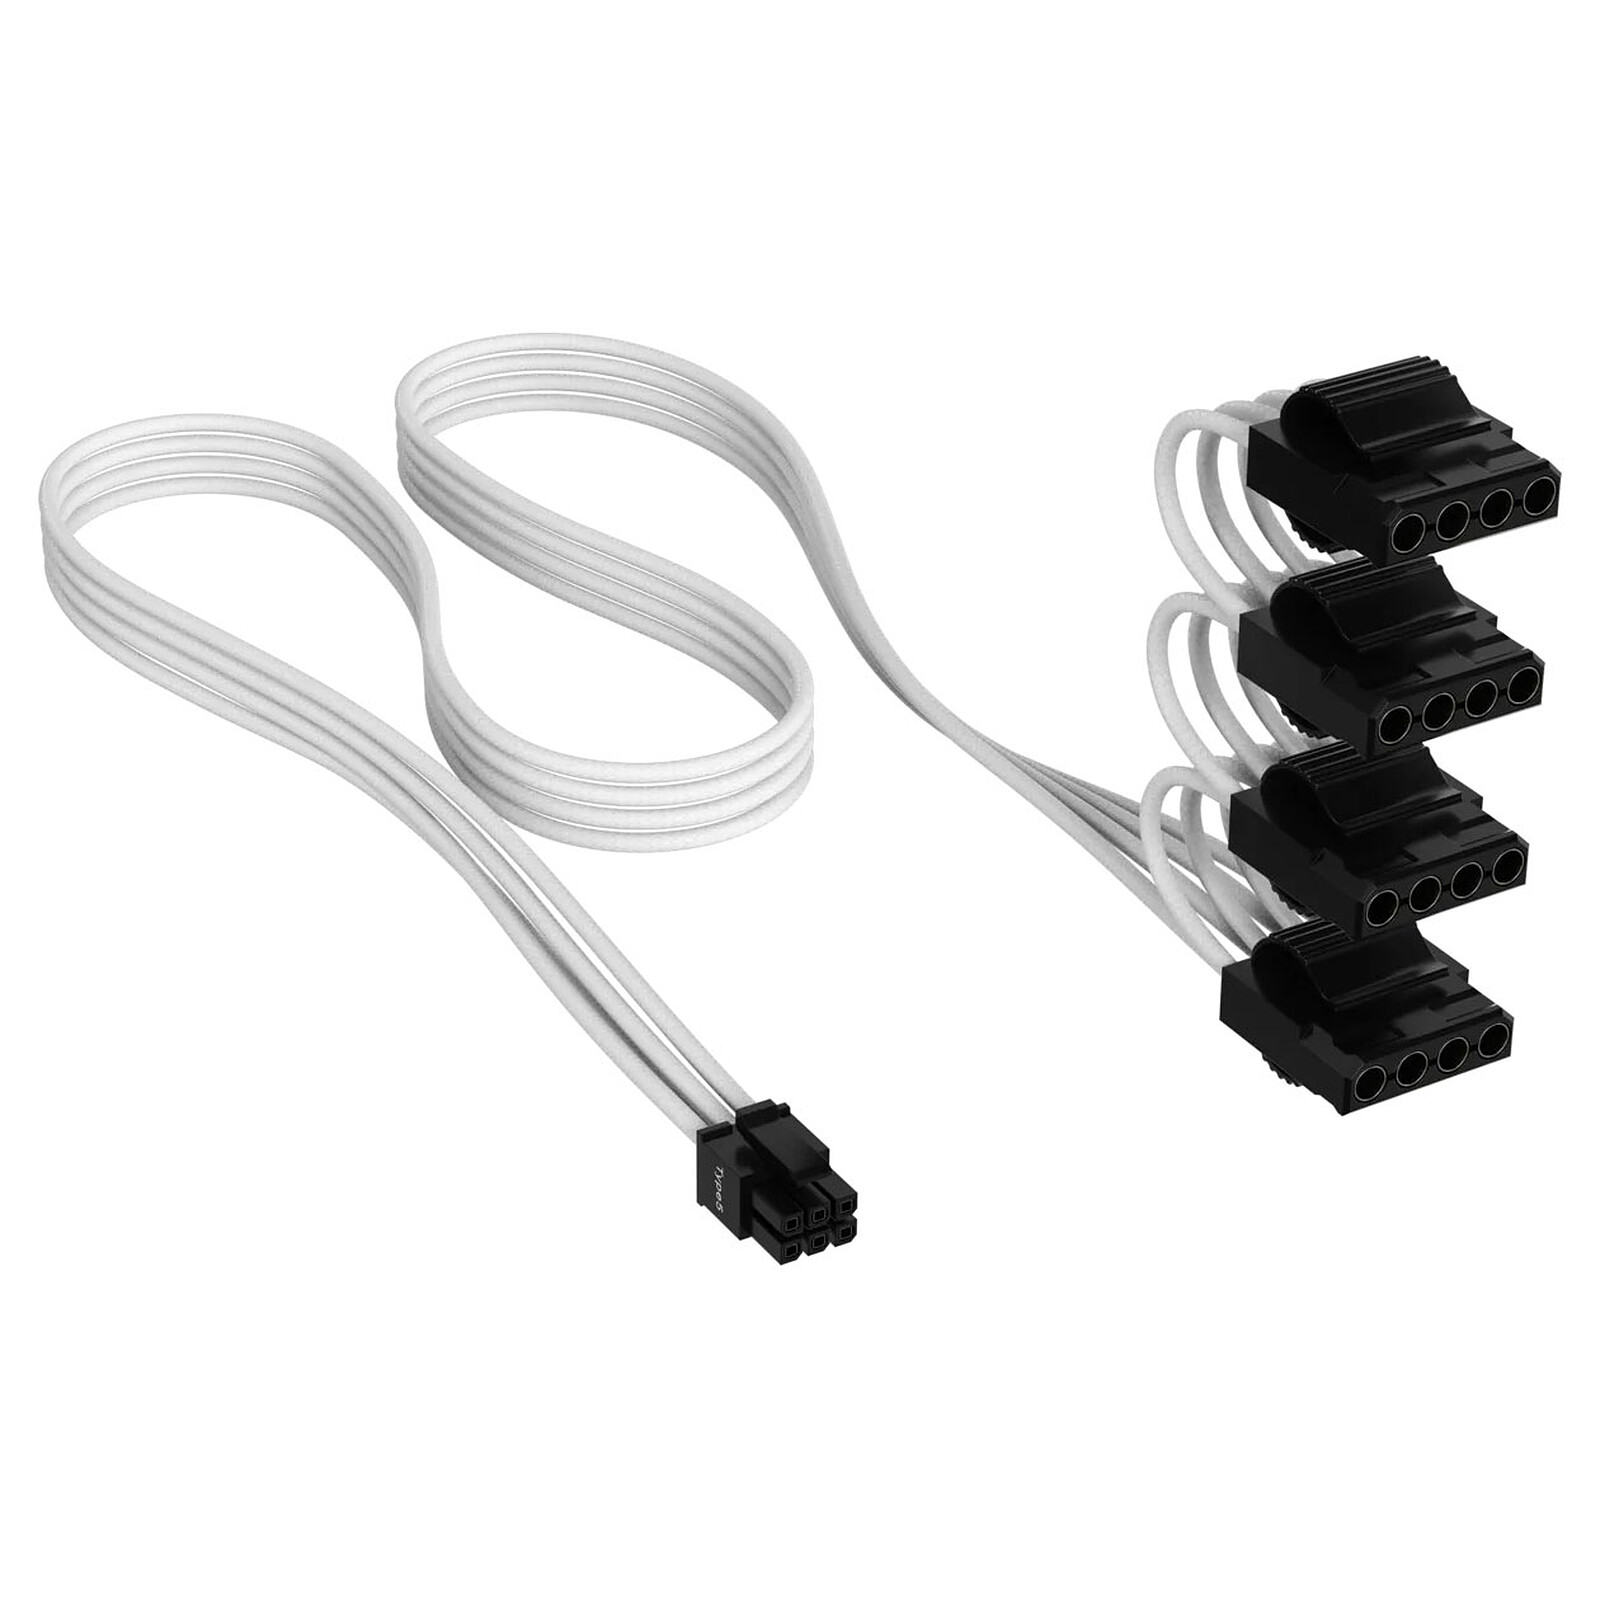 Corsair Premium Câble d'alimentation Molex 4 connecteurs type 5 Gen 5 -  Blanc - Alimentation - Garantie 3 ans LDLC